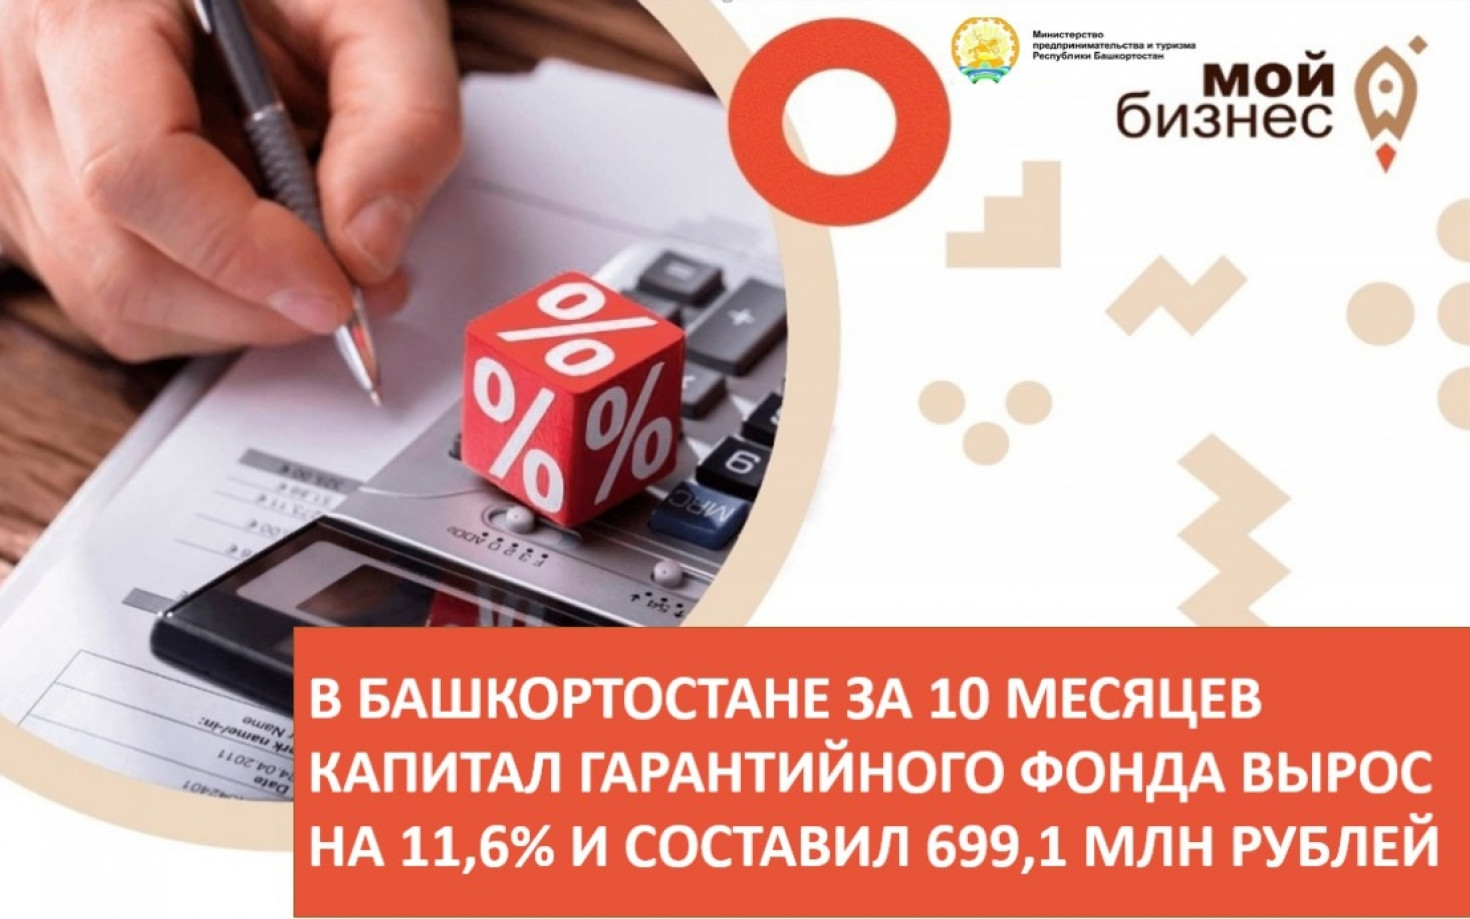 В Башкортостане за 10 месяцев капитал Гарантийного фонда вырос на 11,6% и составил 699,1 млн рублей